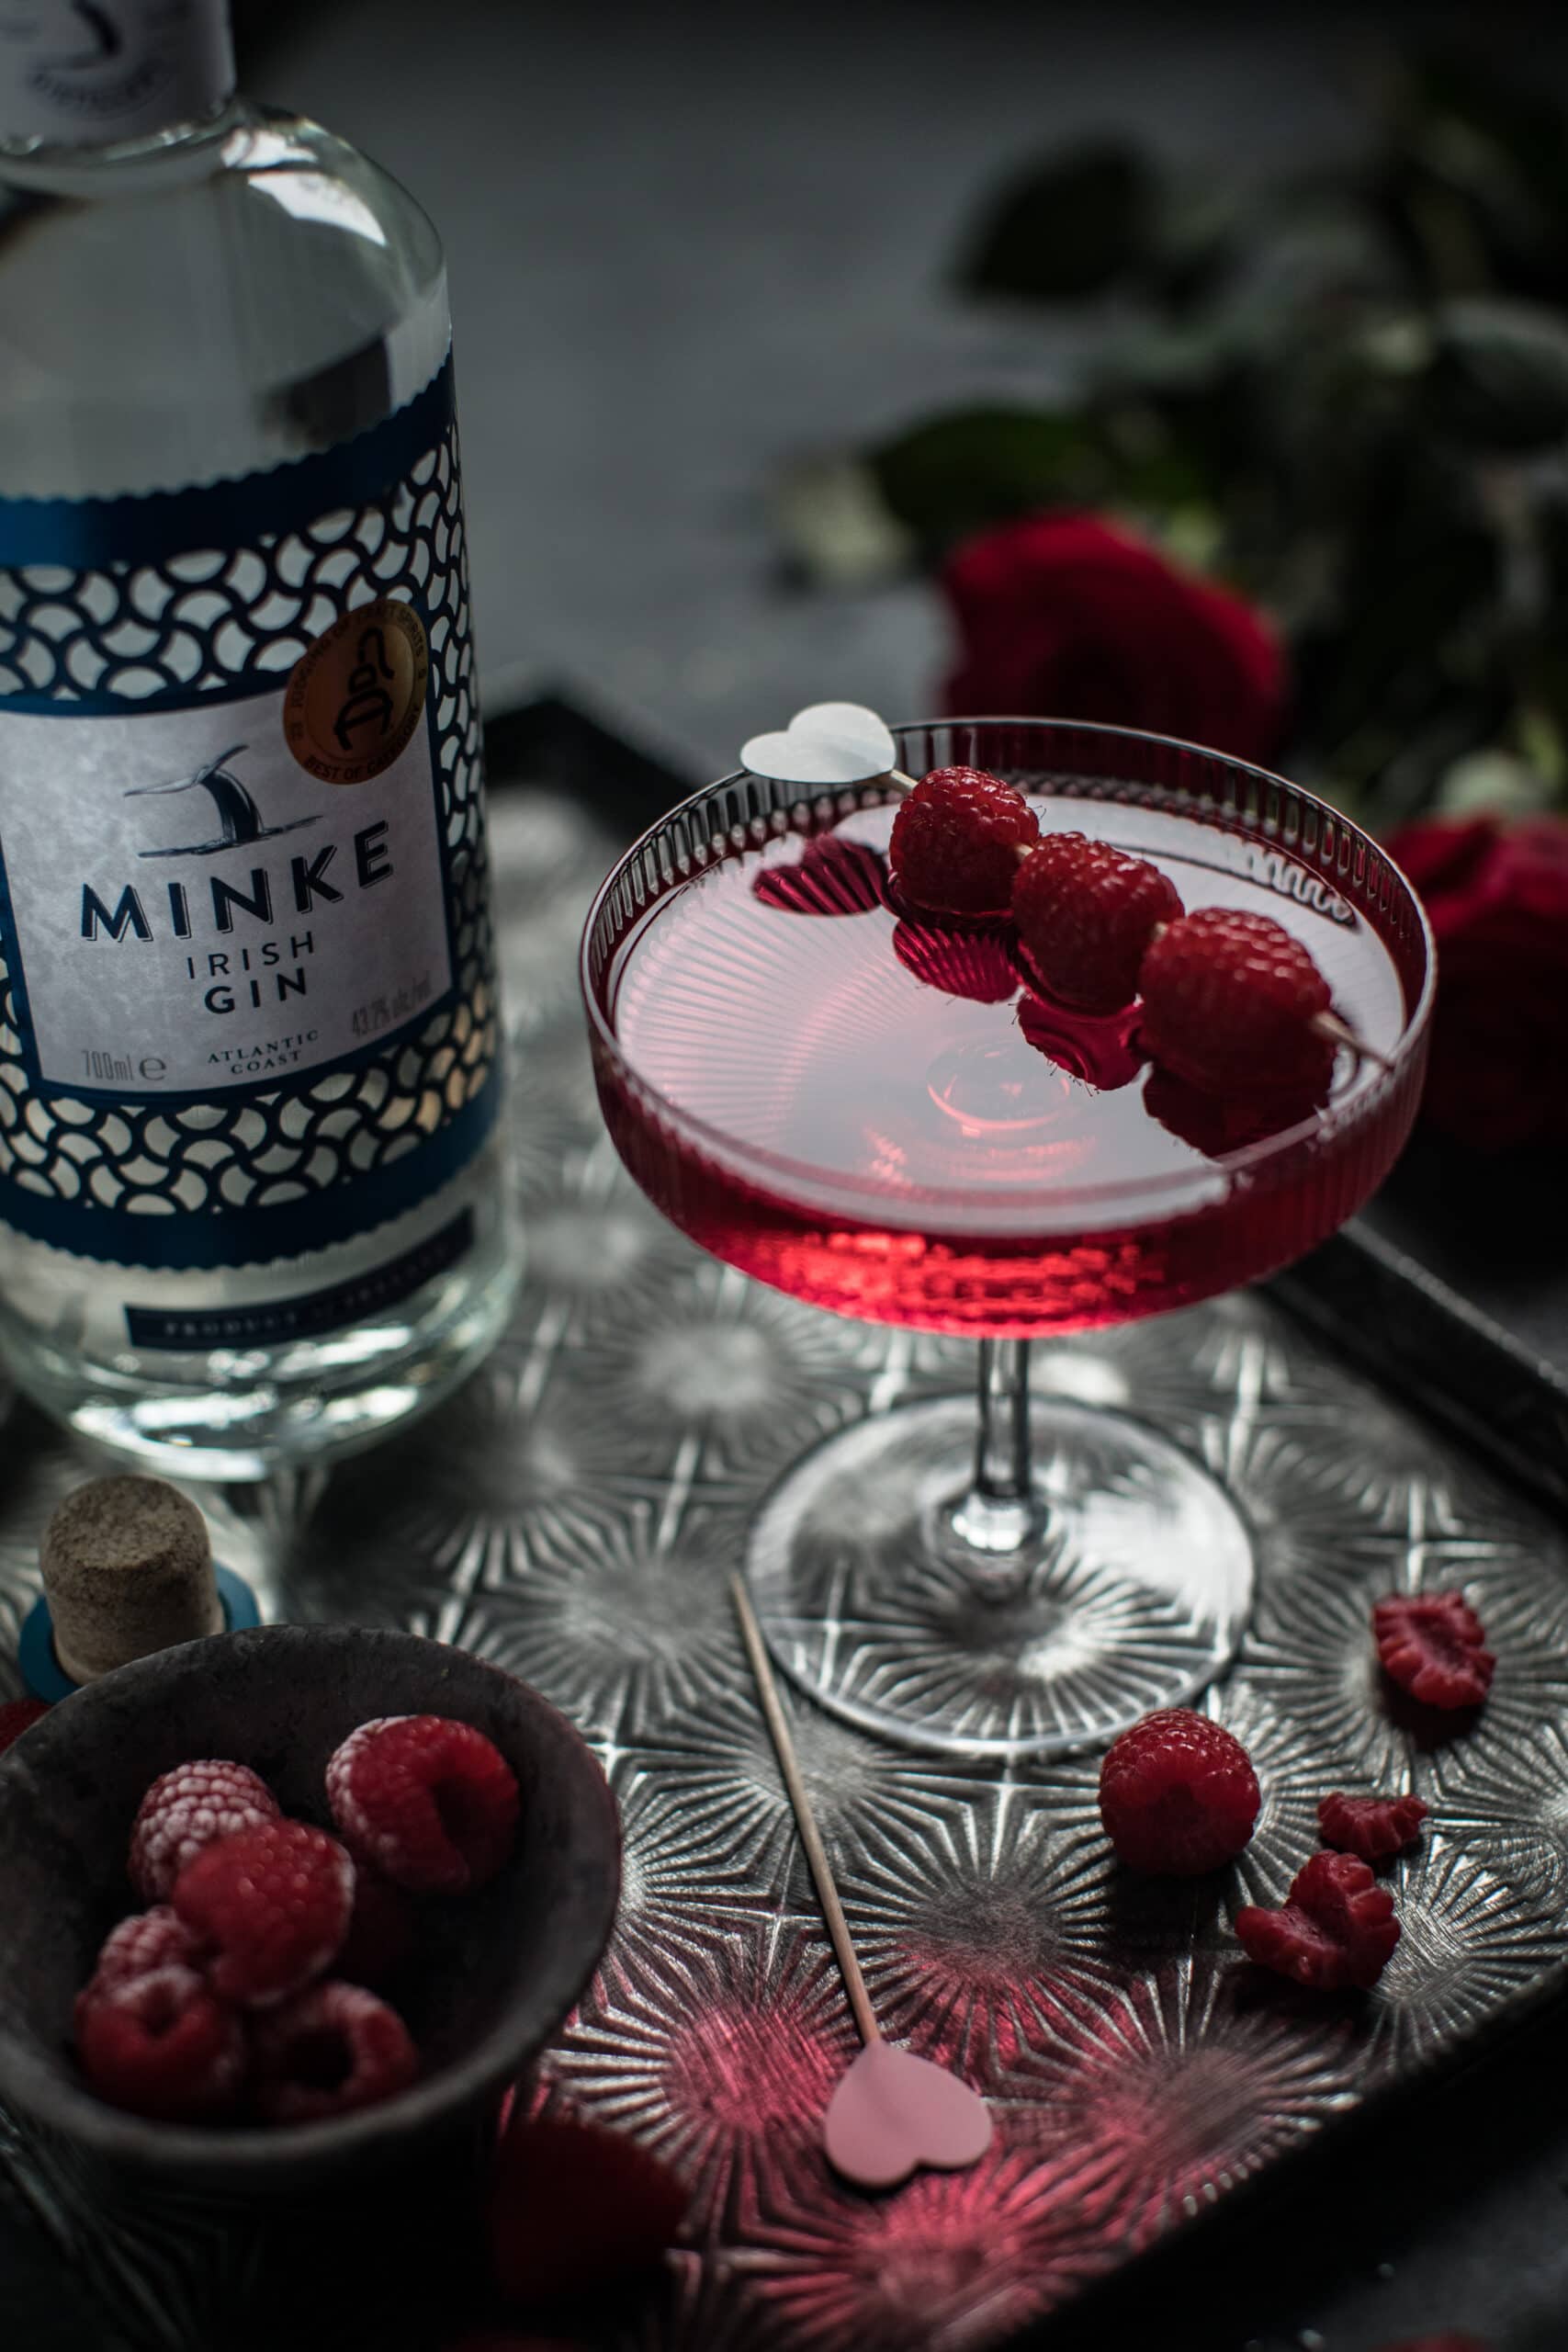 raspberry martini with Minke gin bottle